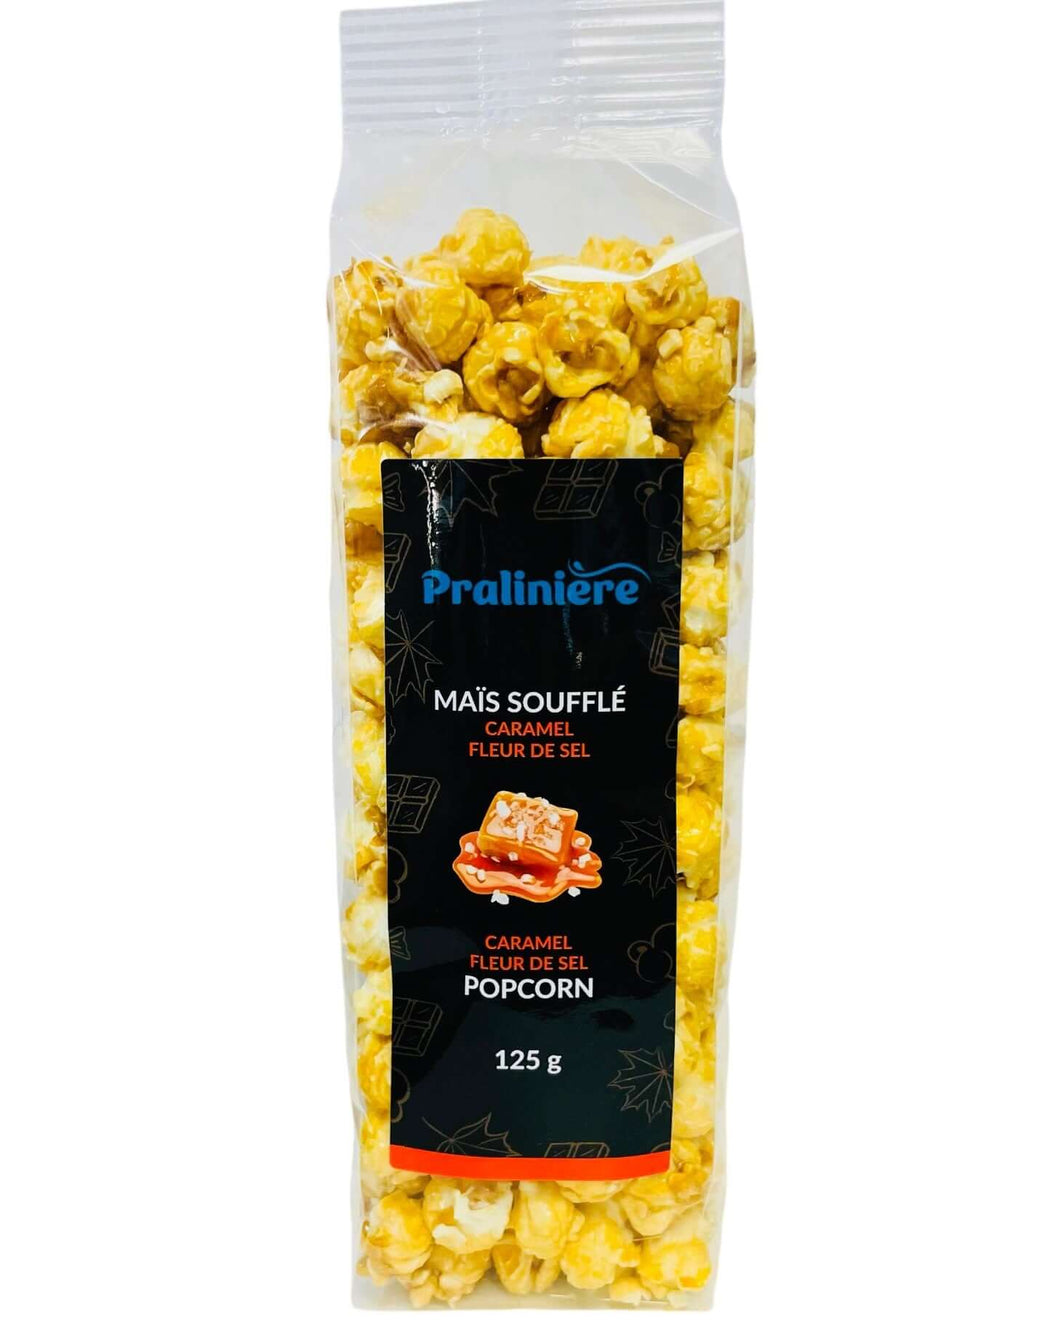 popcorn au caramel fleur de sel a commander en ligne